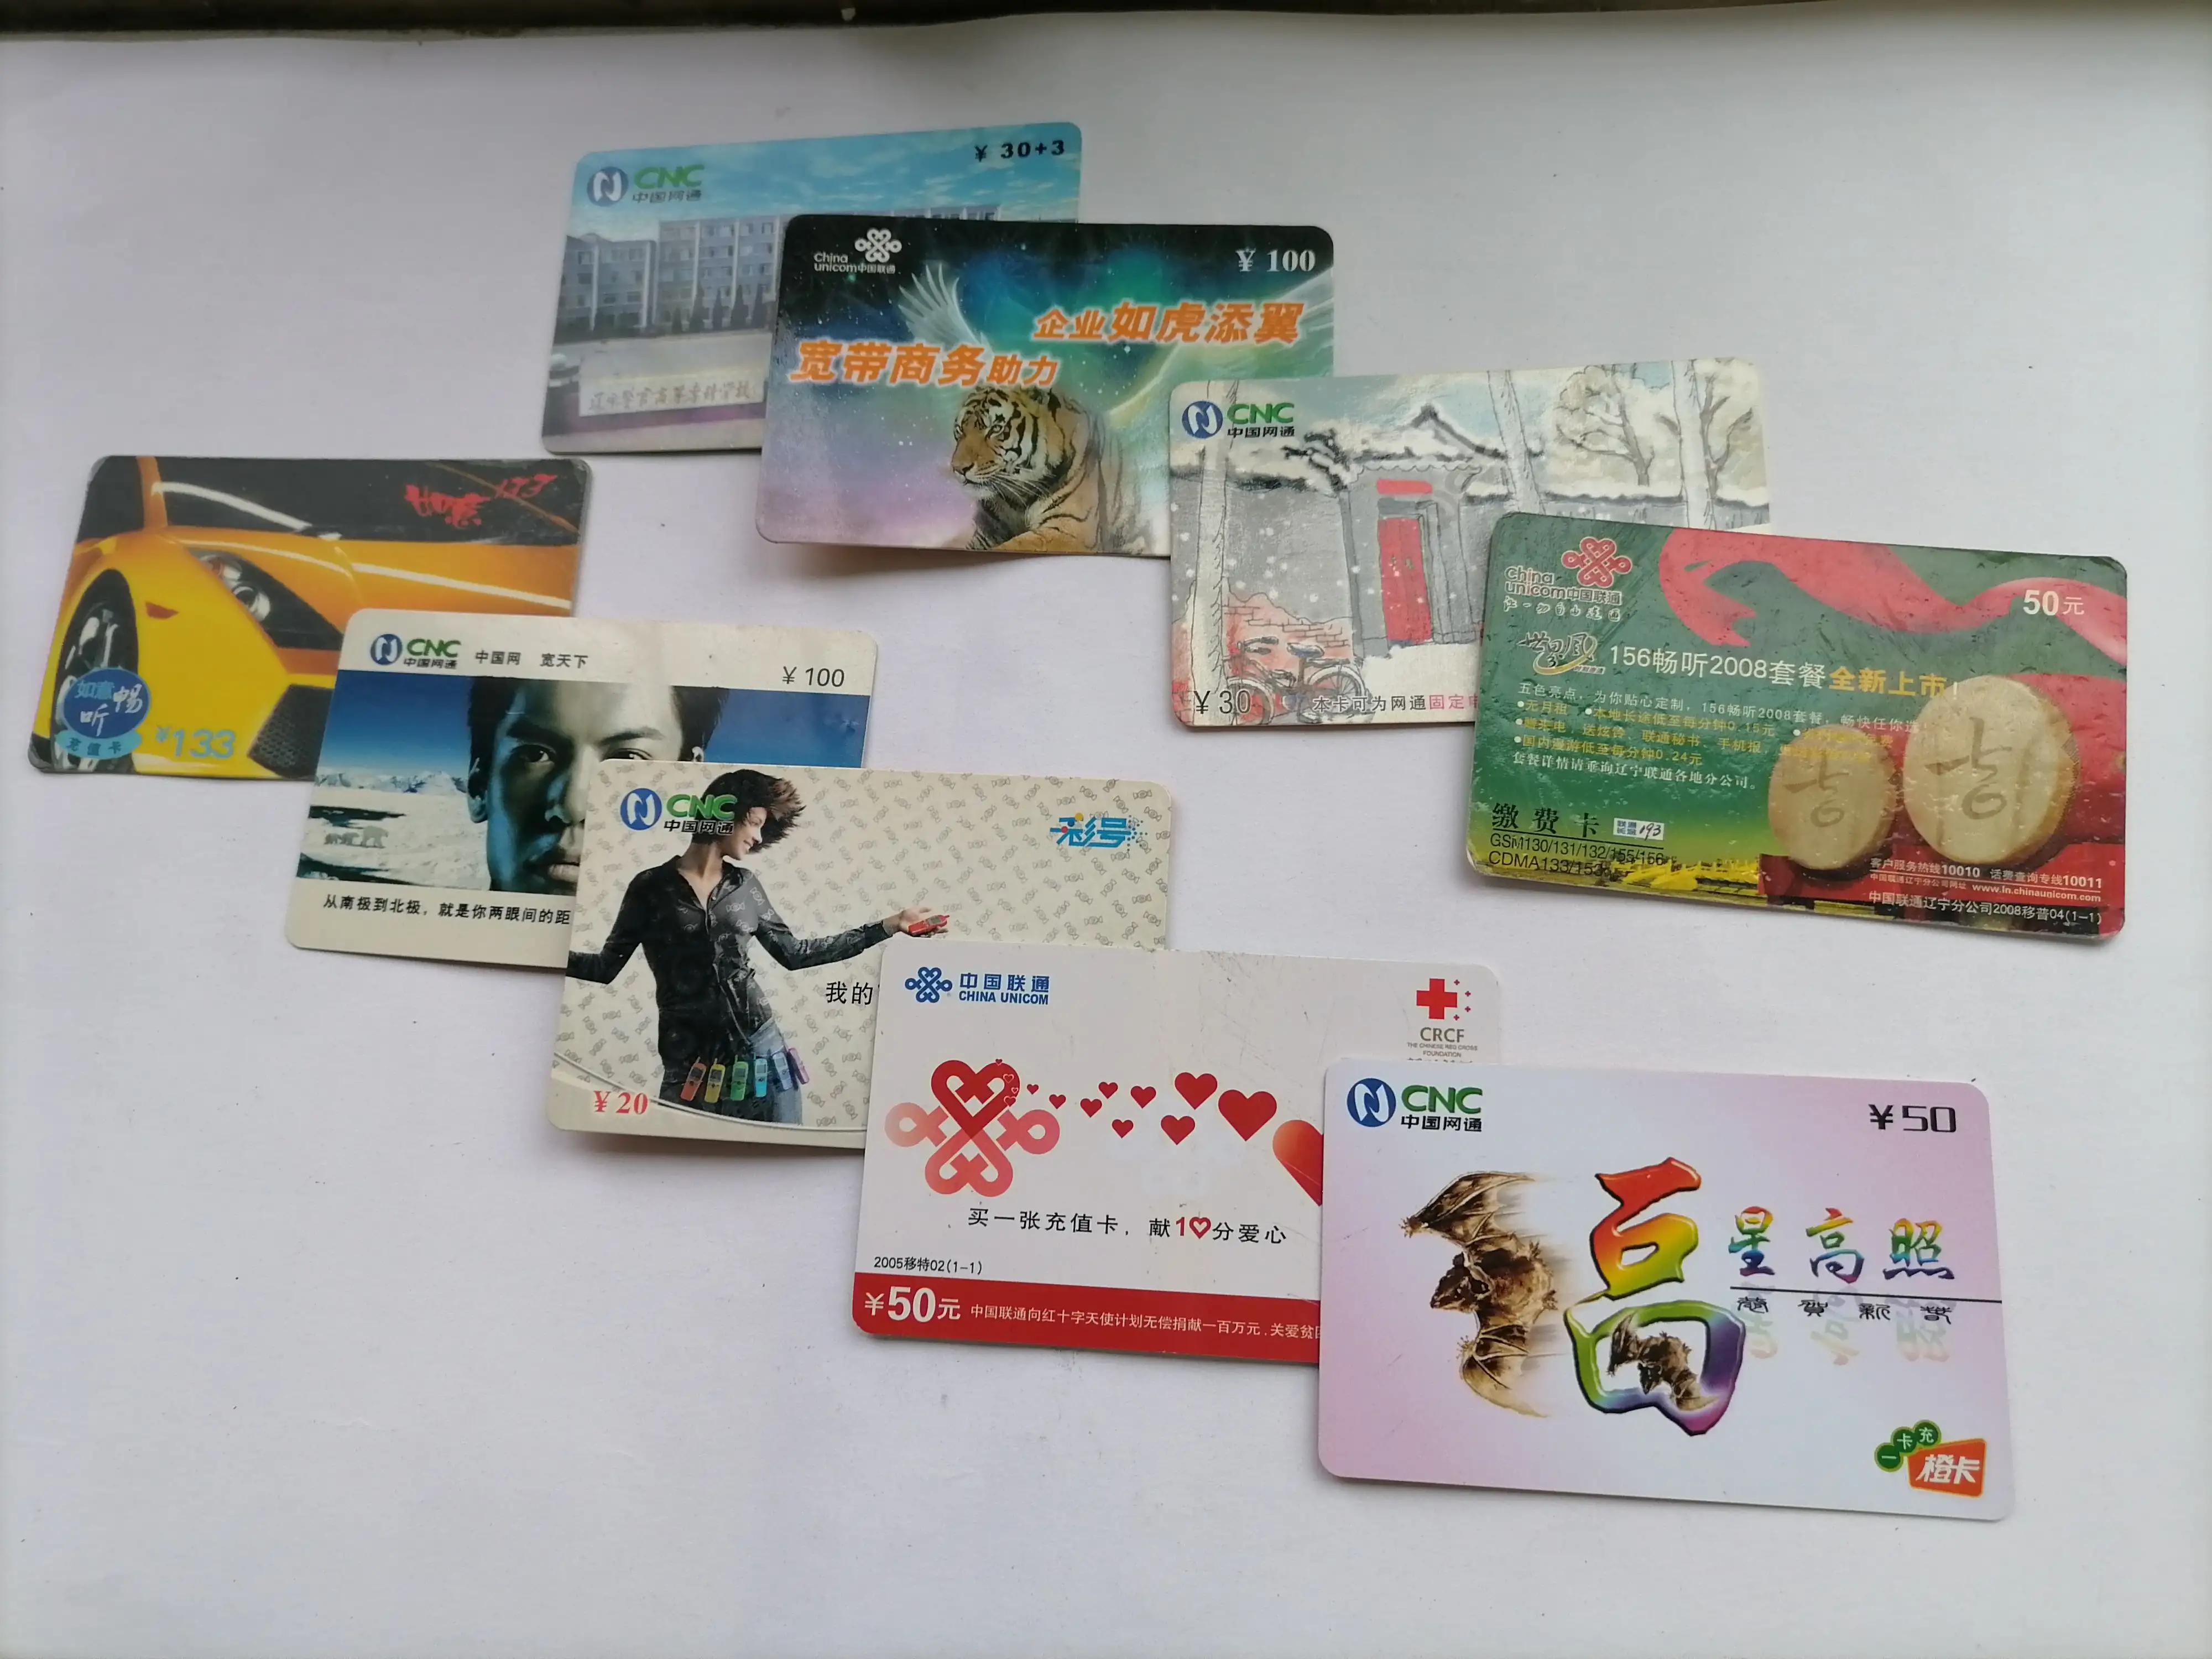 中国联通长途电话纪念卡世界杯(谈收藏电话磁卡的那些事)